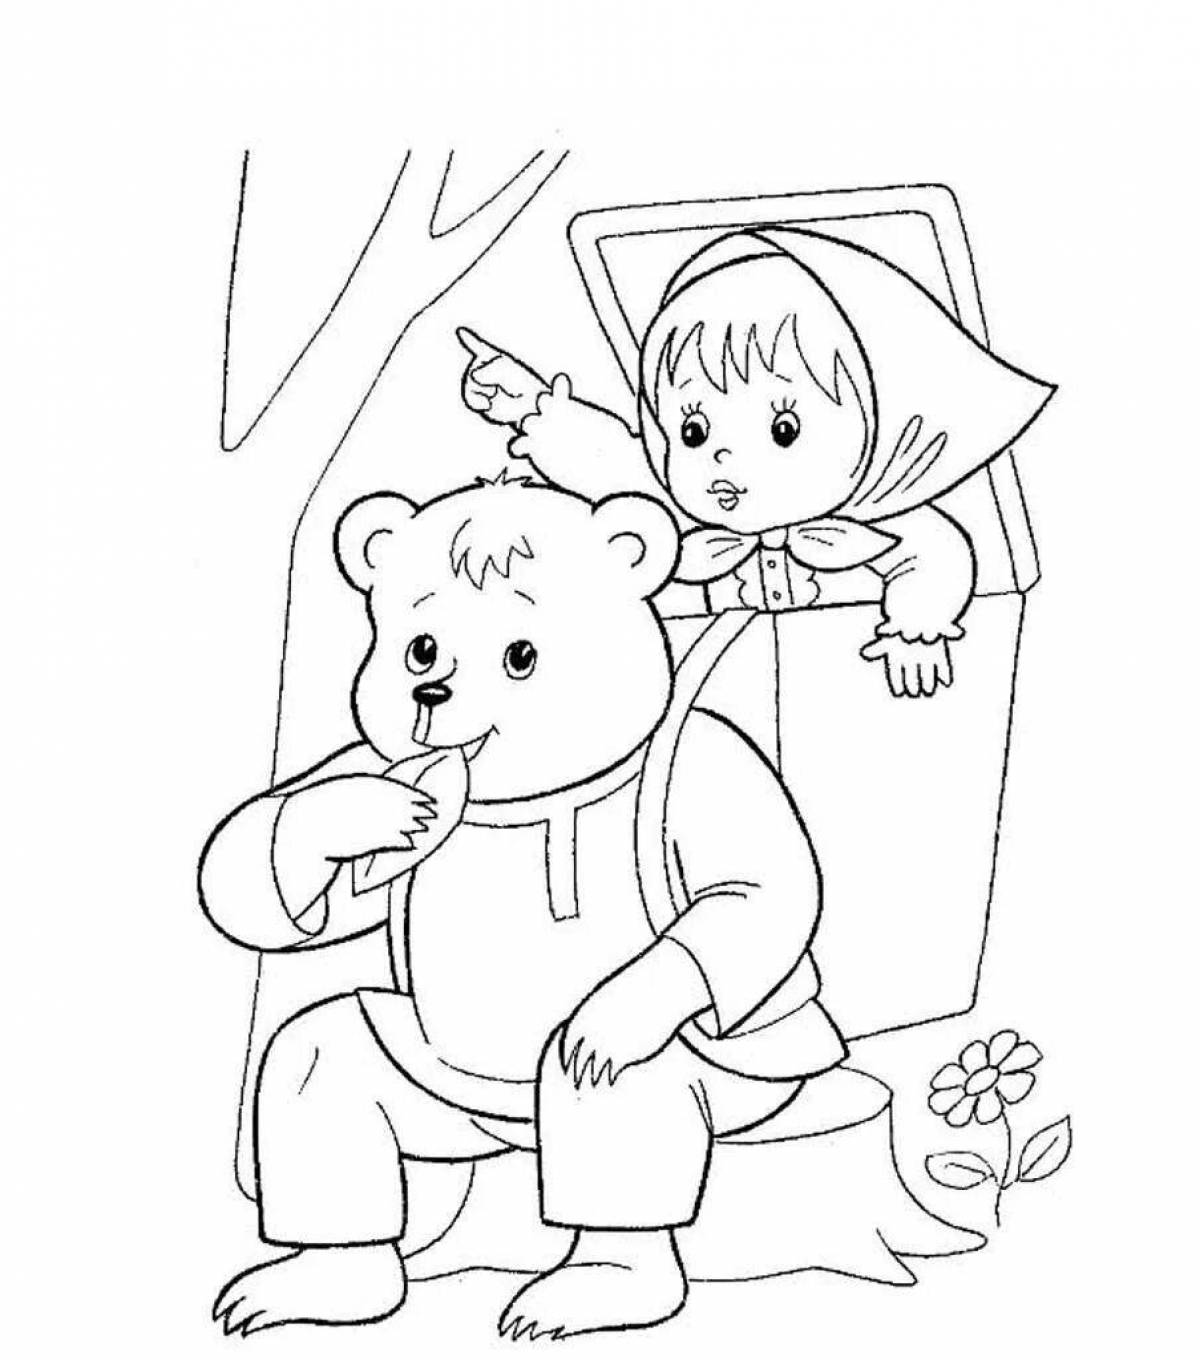 Fun coloring Masha and the bear fairy tale